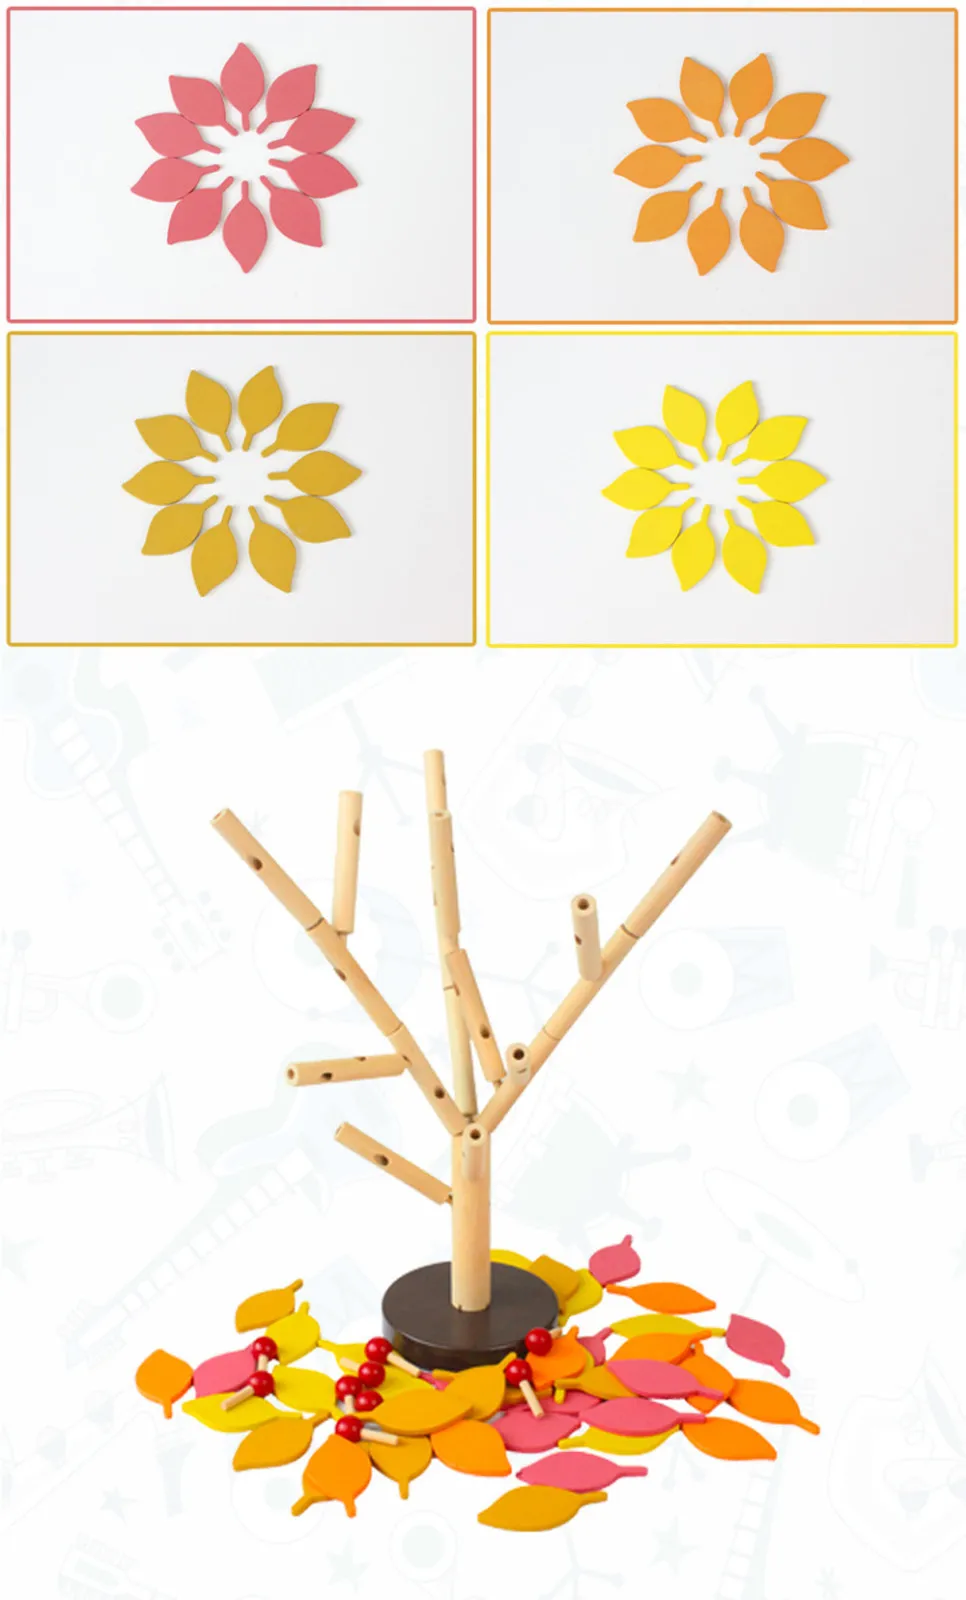 Детские деревянные игрушки для творчества с листьями и деревом, обучающая развивающая игрушка, развивающие игрушки для малышей, рождественский подарок для детей